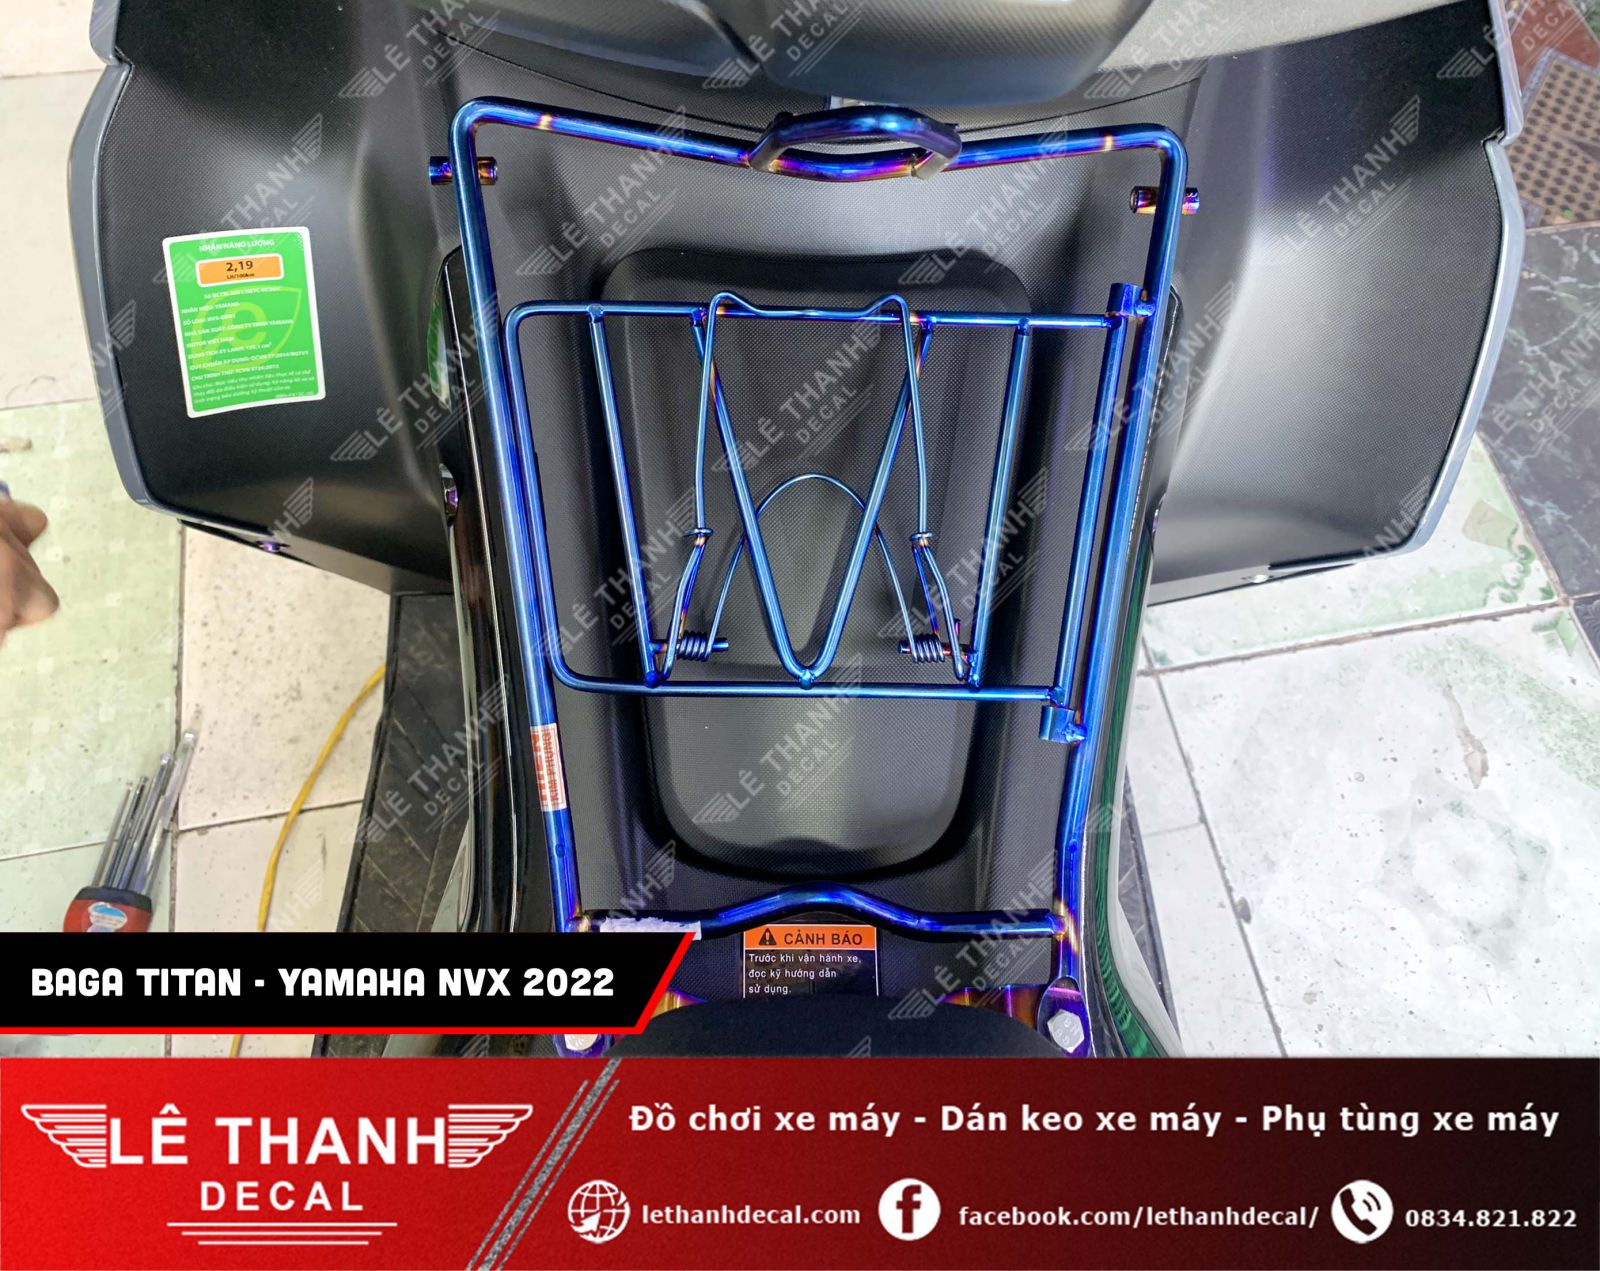 Baga titan cho Yamaha NVX 2022